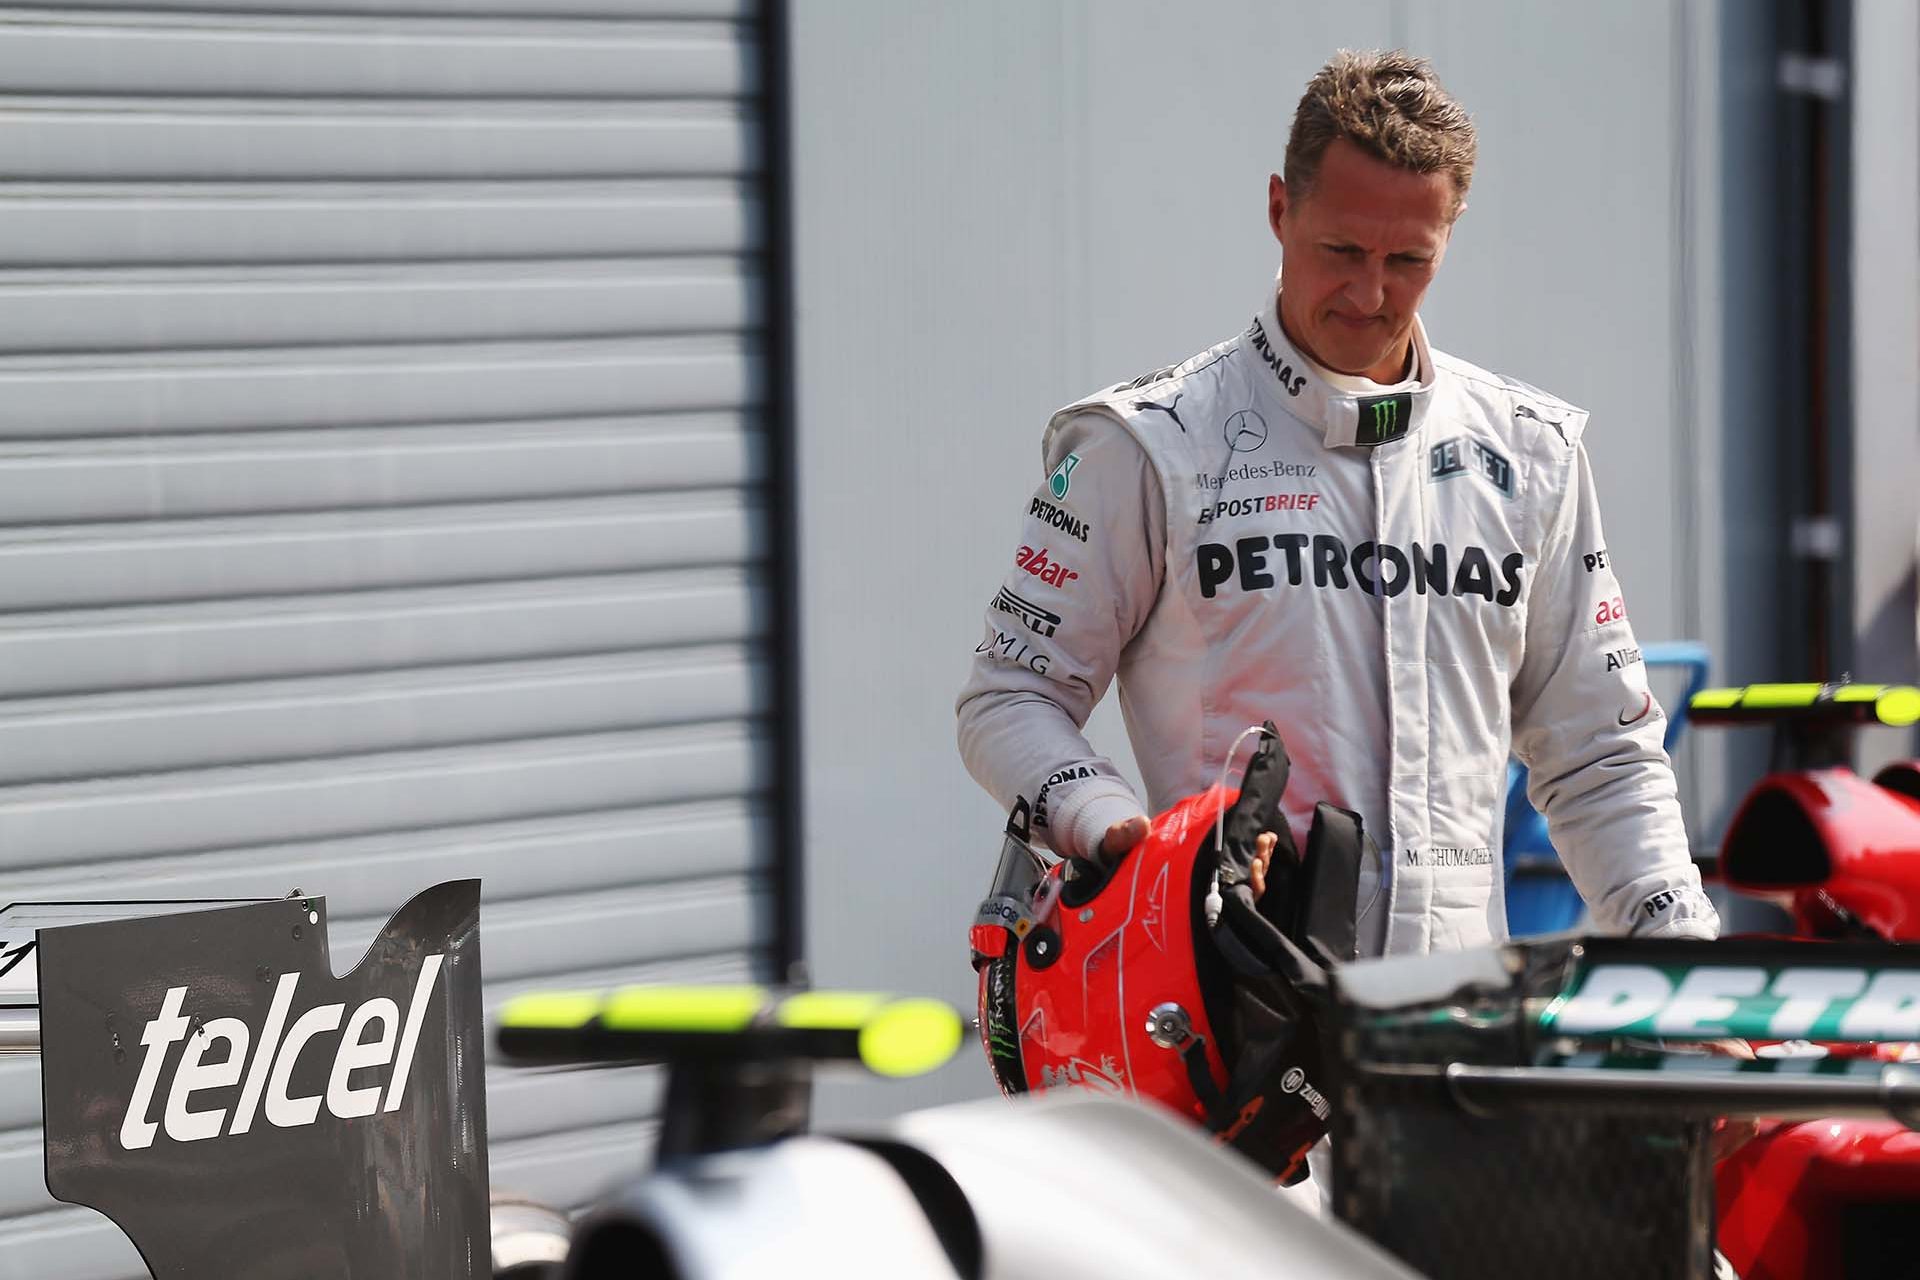 Schumacher's is 'a hopeless case'